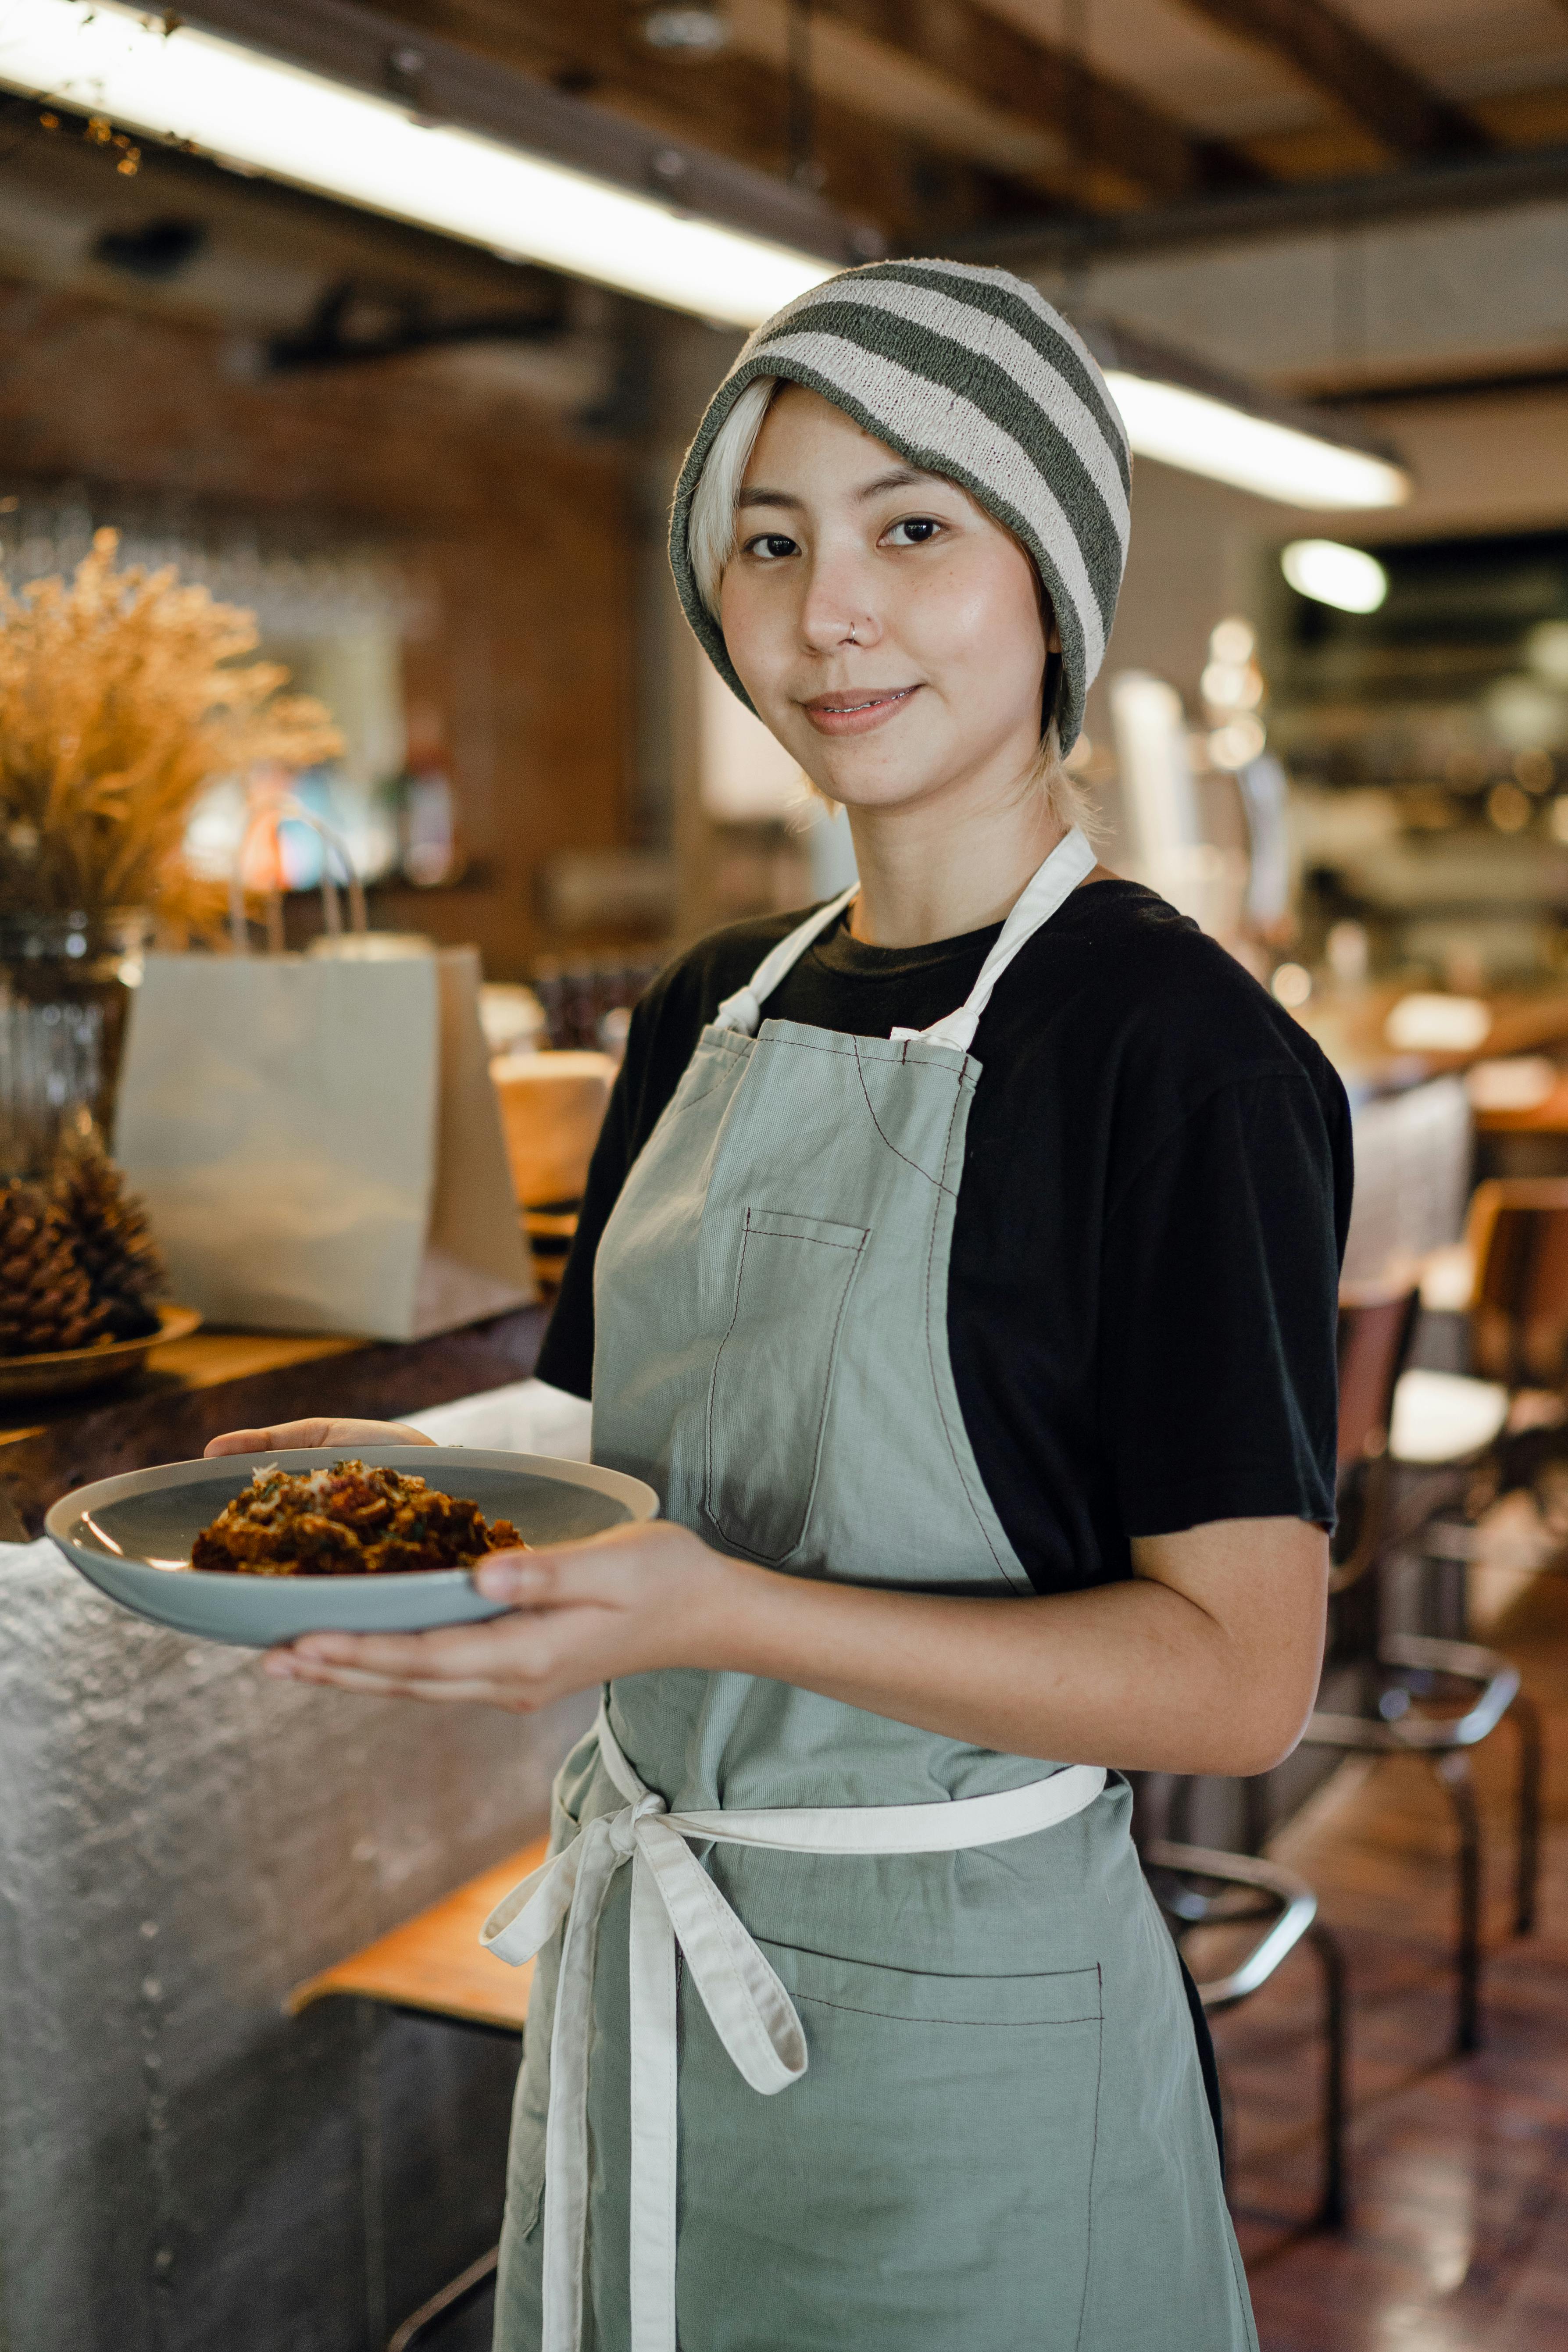 Eine Frau serviert Essen in einem Café | Quelle: Pexels